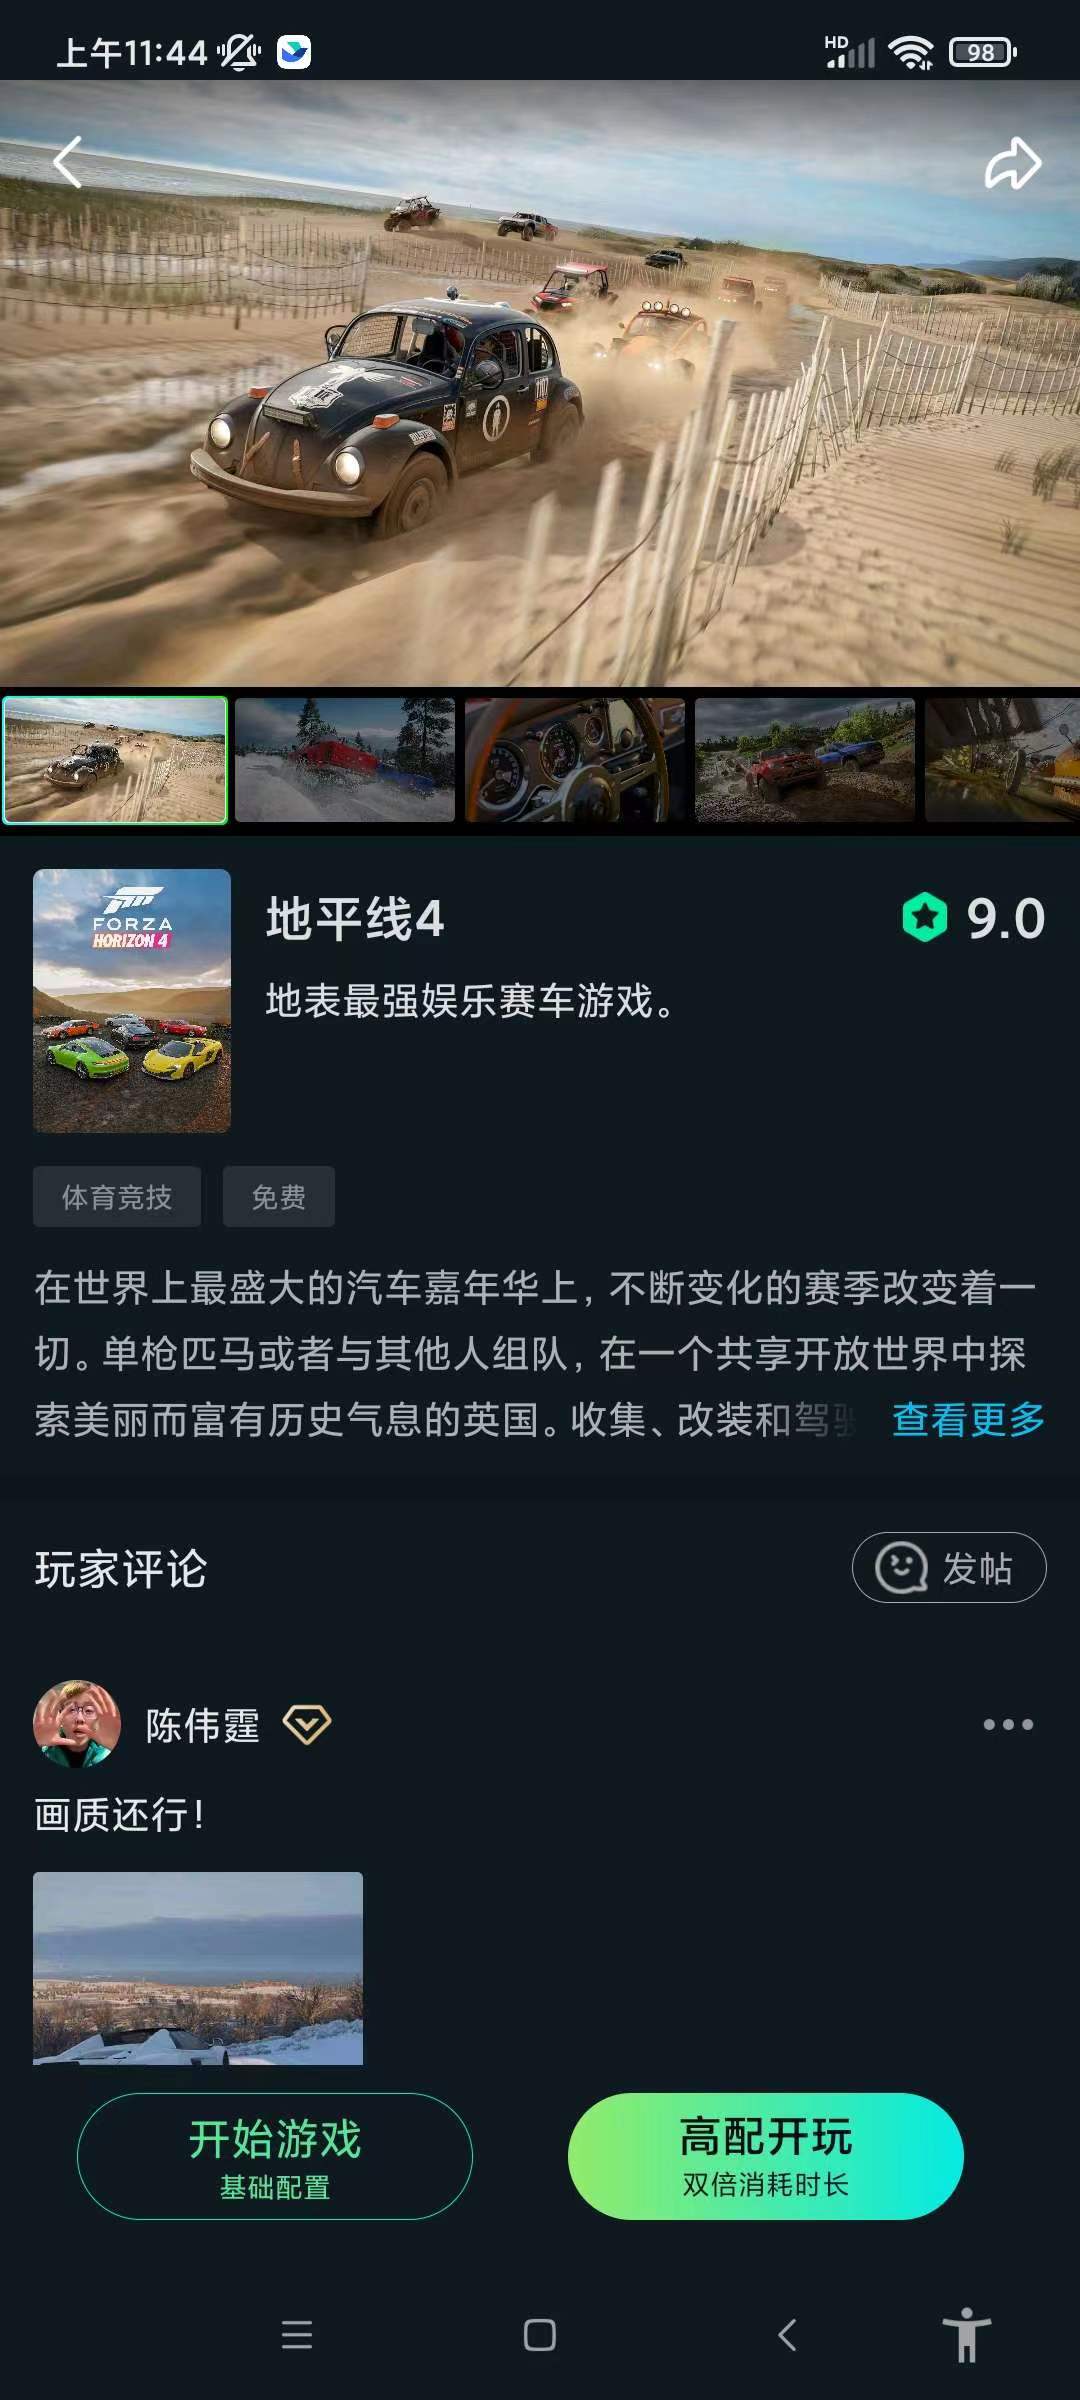 YOWA云游戏2.8.15解锁会员手机畅玩steam 屠城辅助网www.tcfz1.com4208